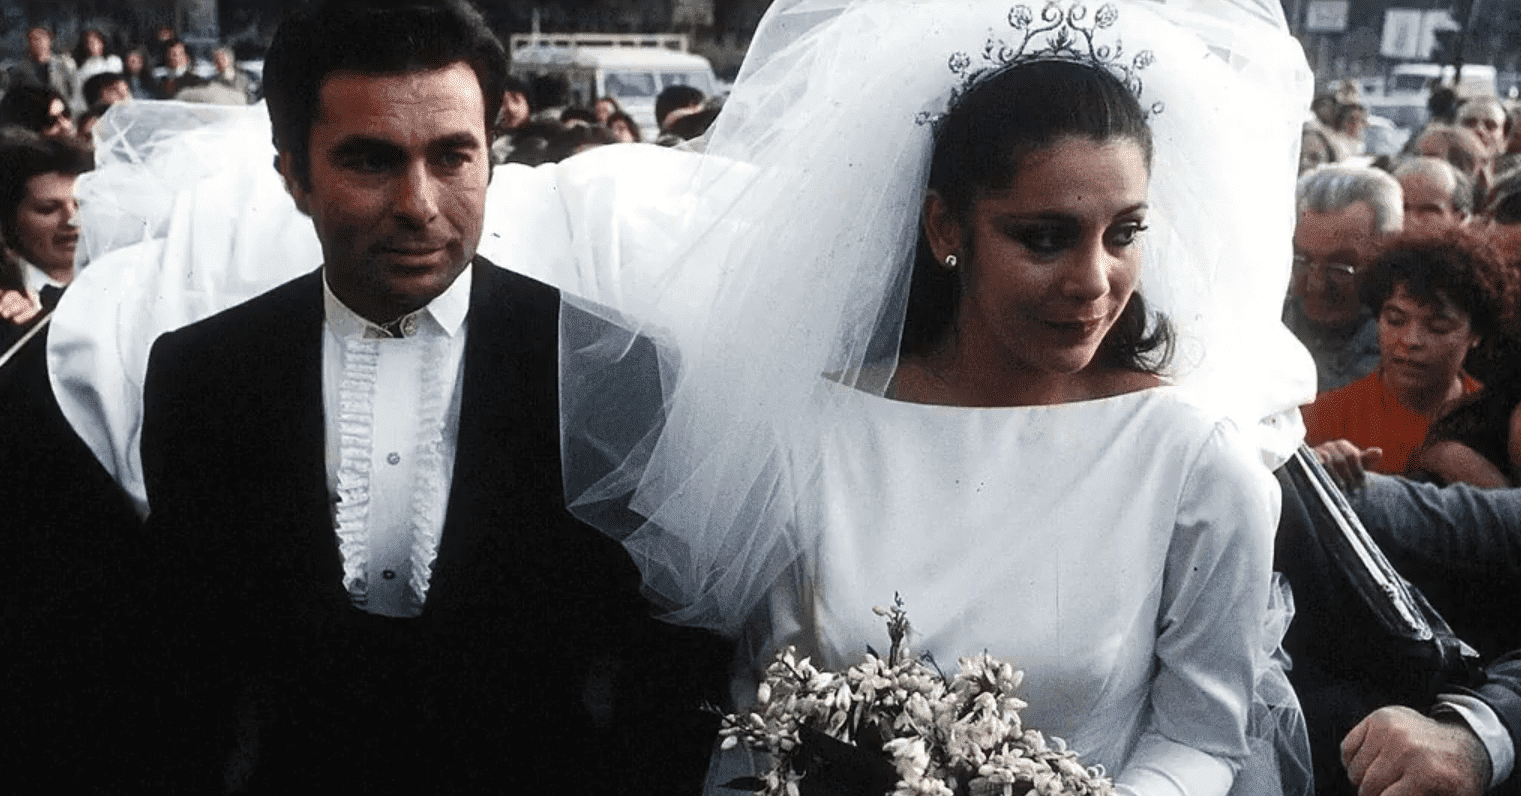 Isabel Pantoja y el torero Francisco Rivera, 'Paquirri', en Sevilla, durante su boda, el 30 de abril de 1983, en Sevilla. | Foto: YouTube/MegaMag